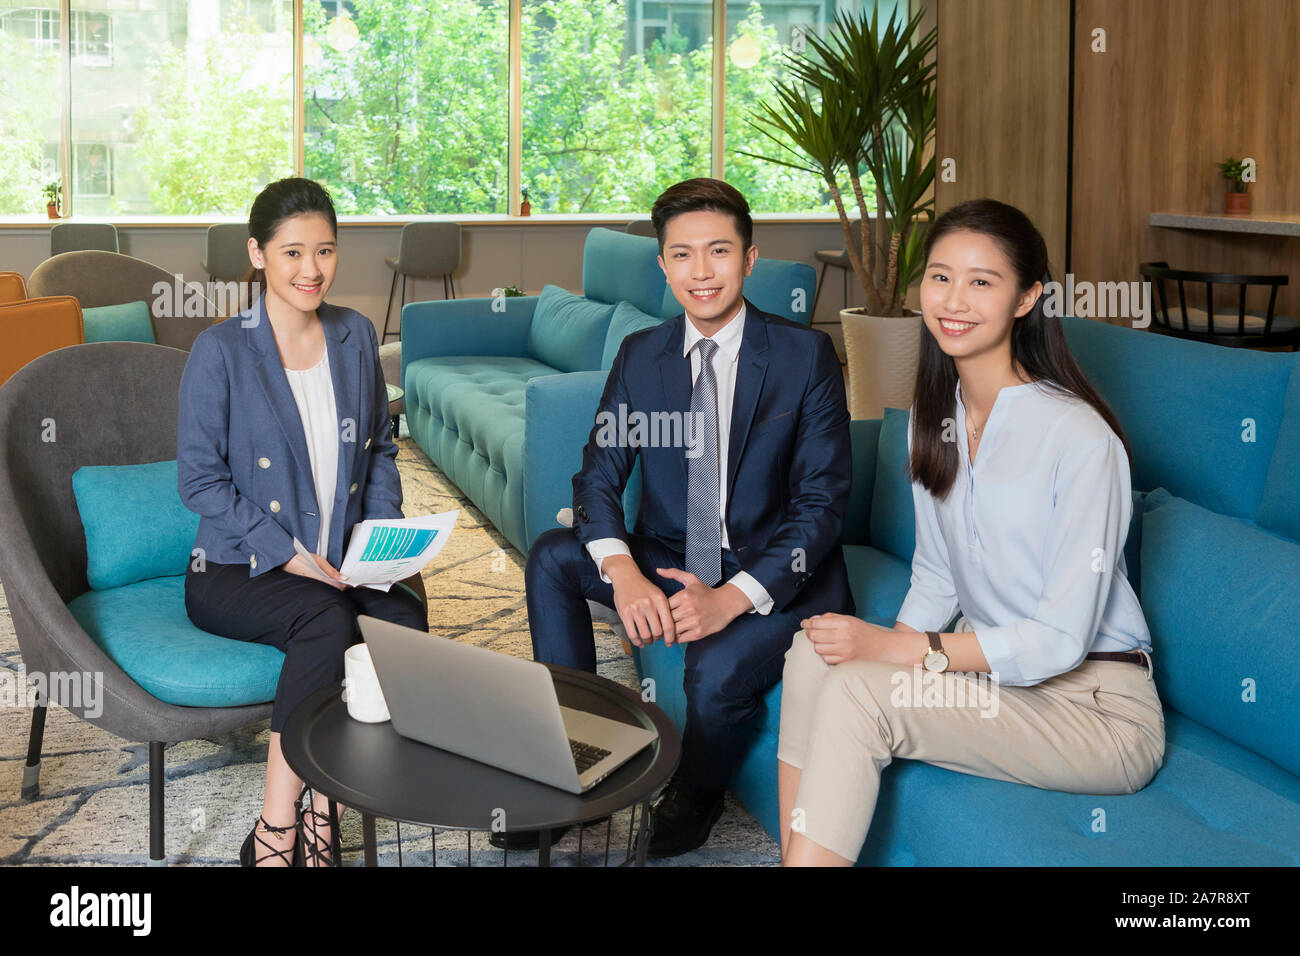 Portrait de trois hommes et femmes smiling businesspeople sitting dans un bureau avec un ordinateur portable sur la table Banque D'Images